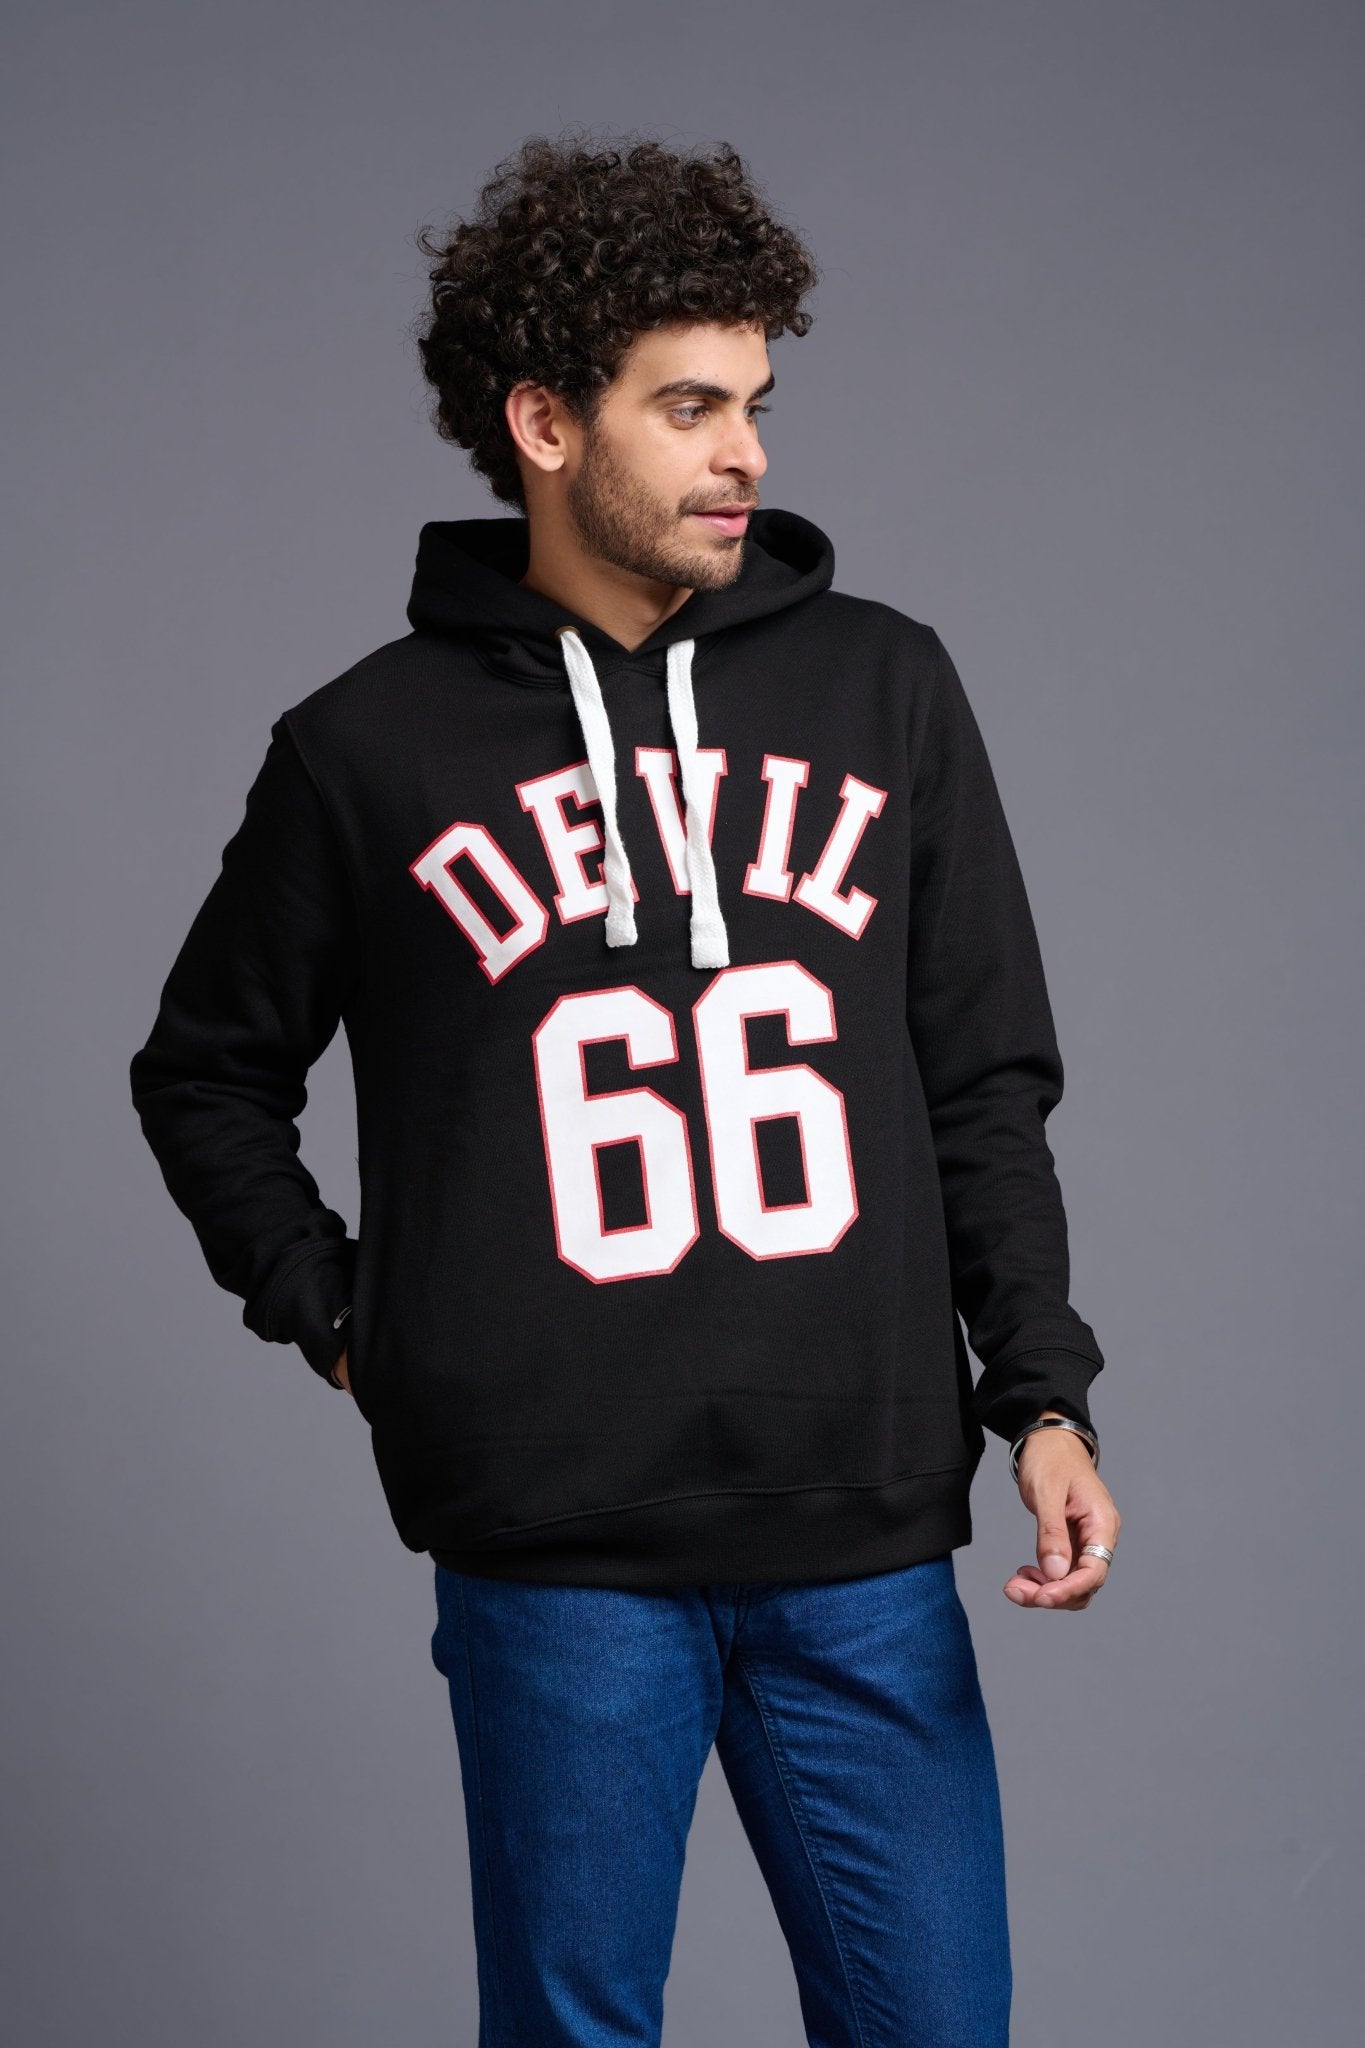 Devil 66 in White Printed Black Hoodie for Men - Go Devil